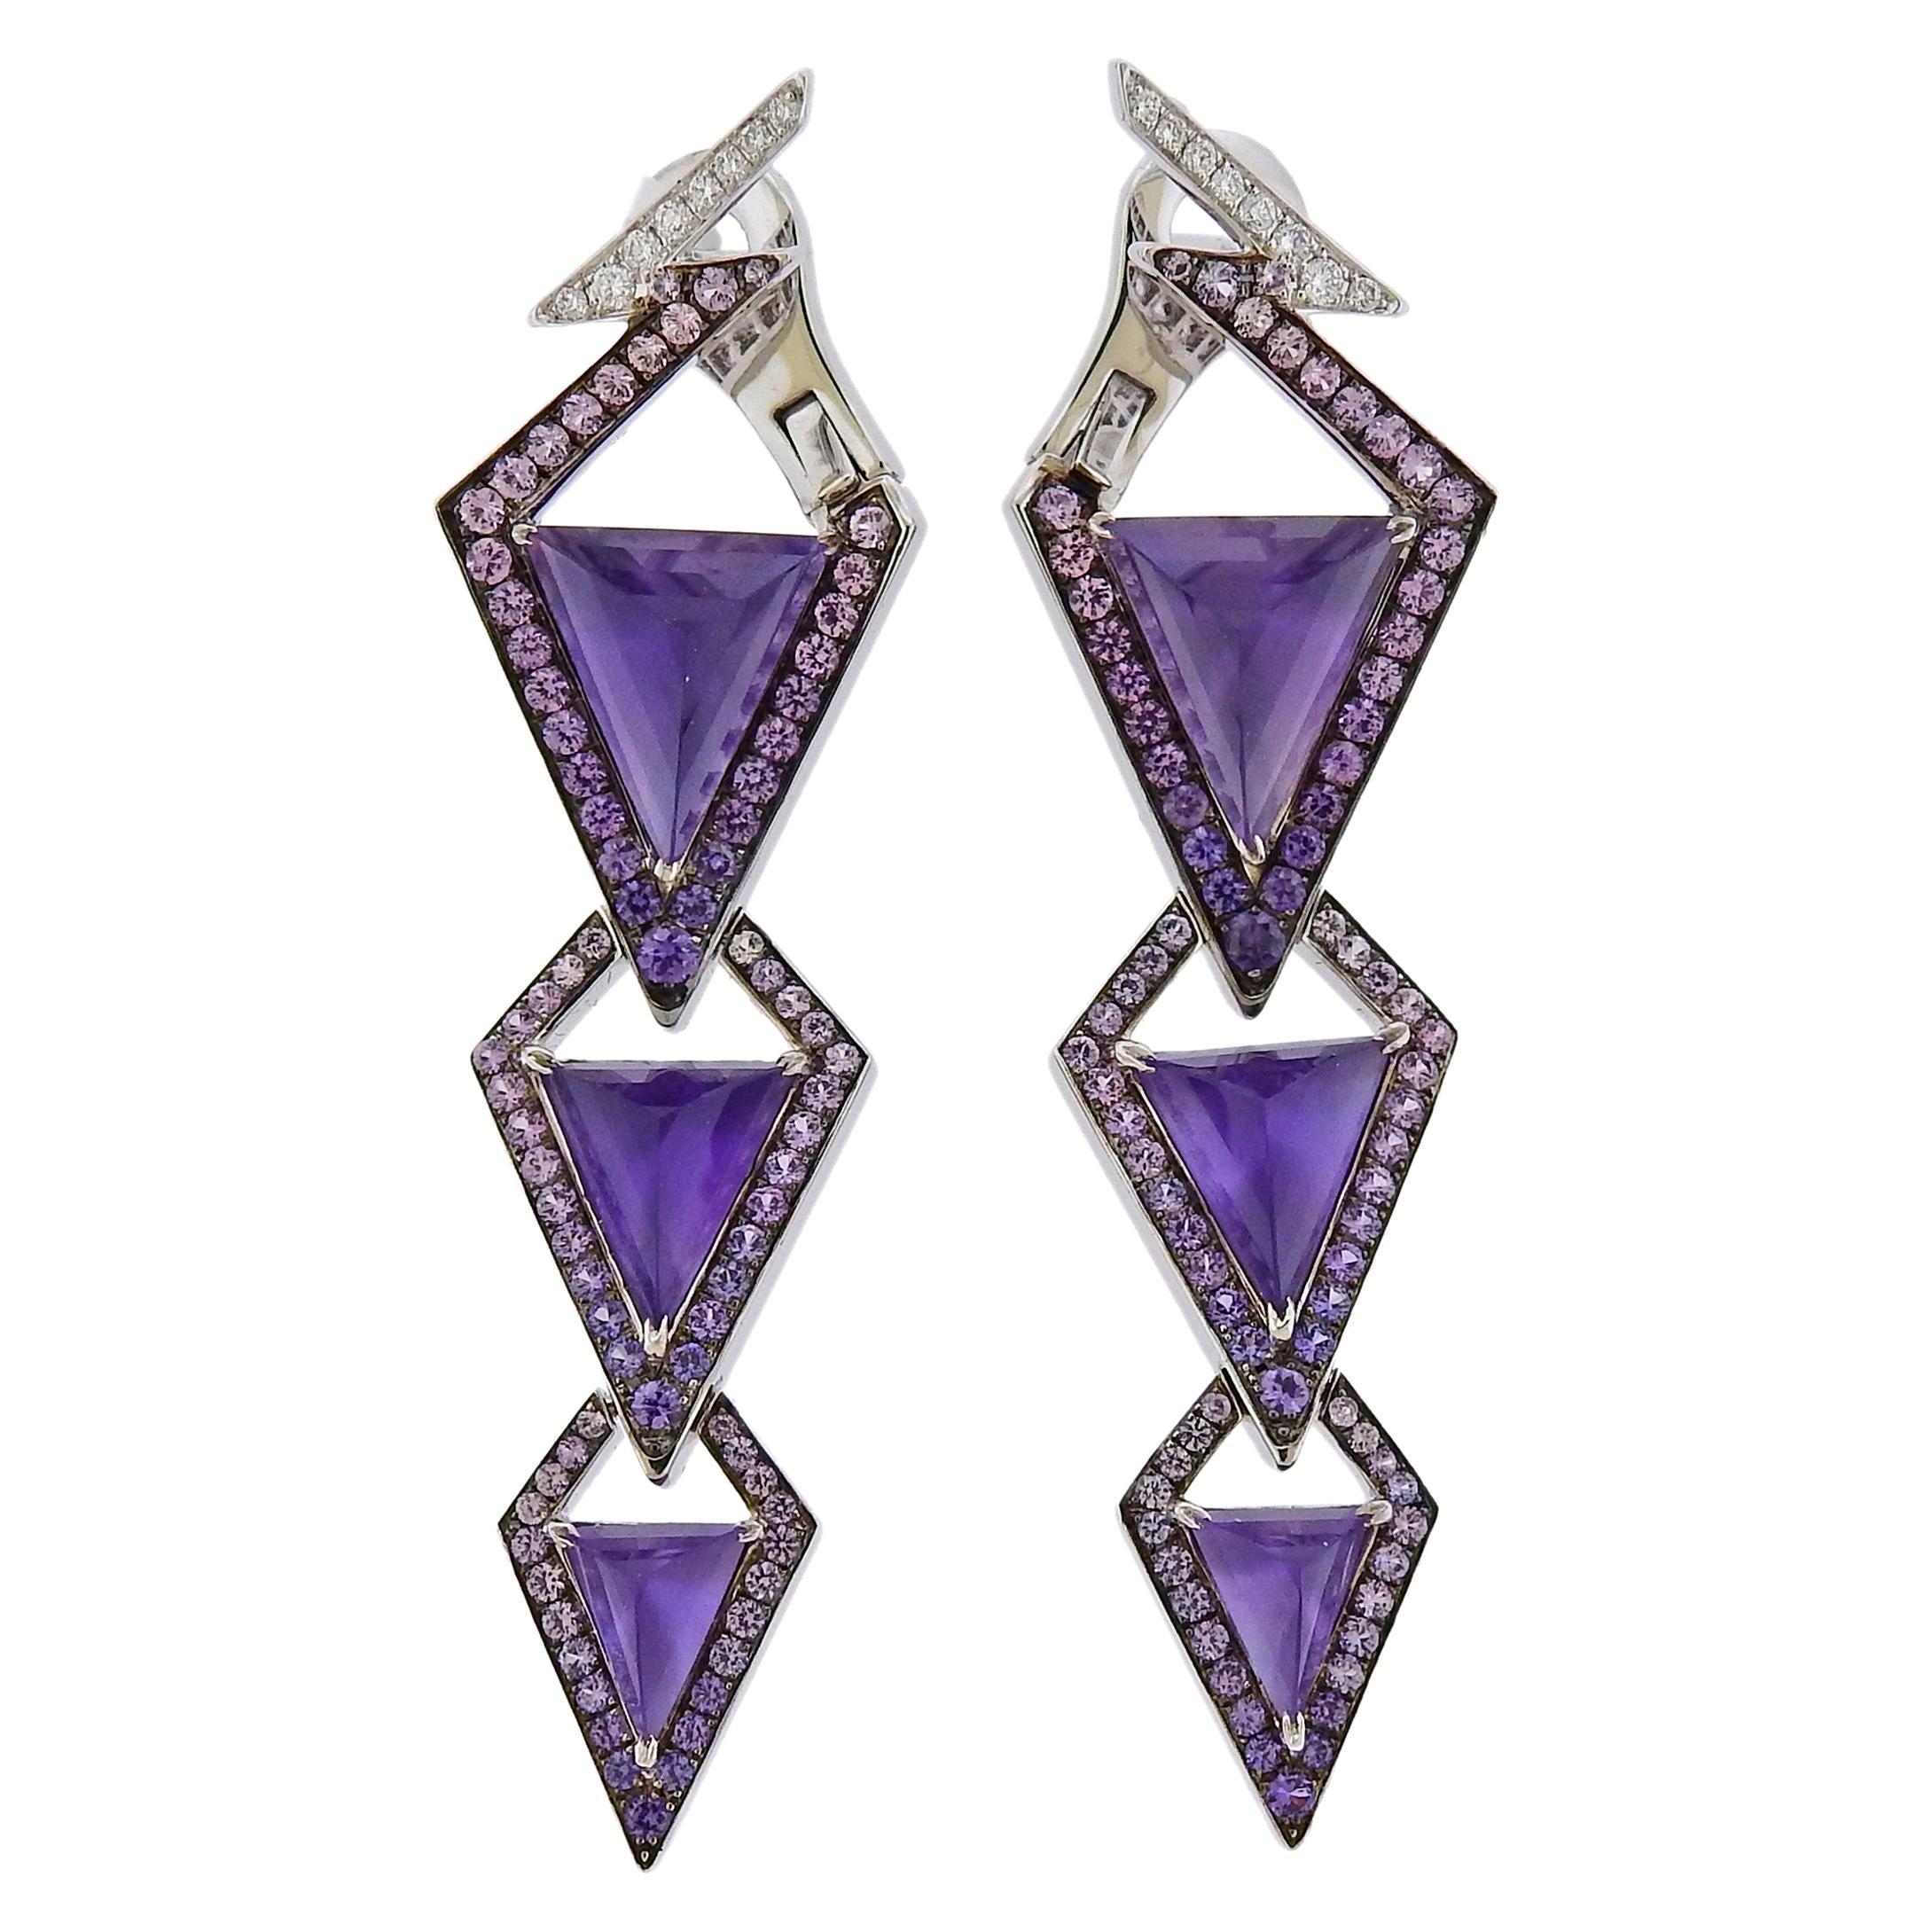 Stephen Webster Lady Stardust Amethyst Sapphire Diamond Earrings